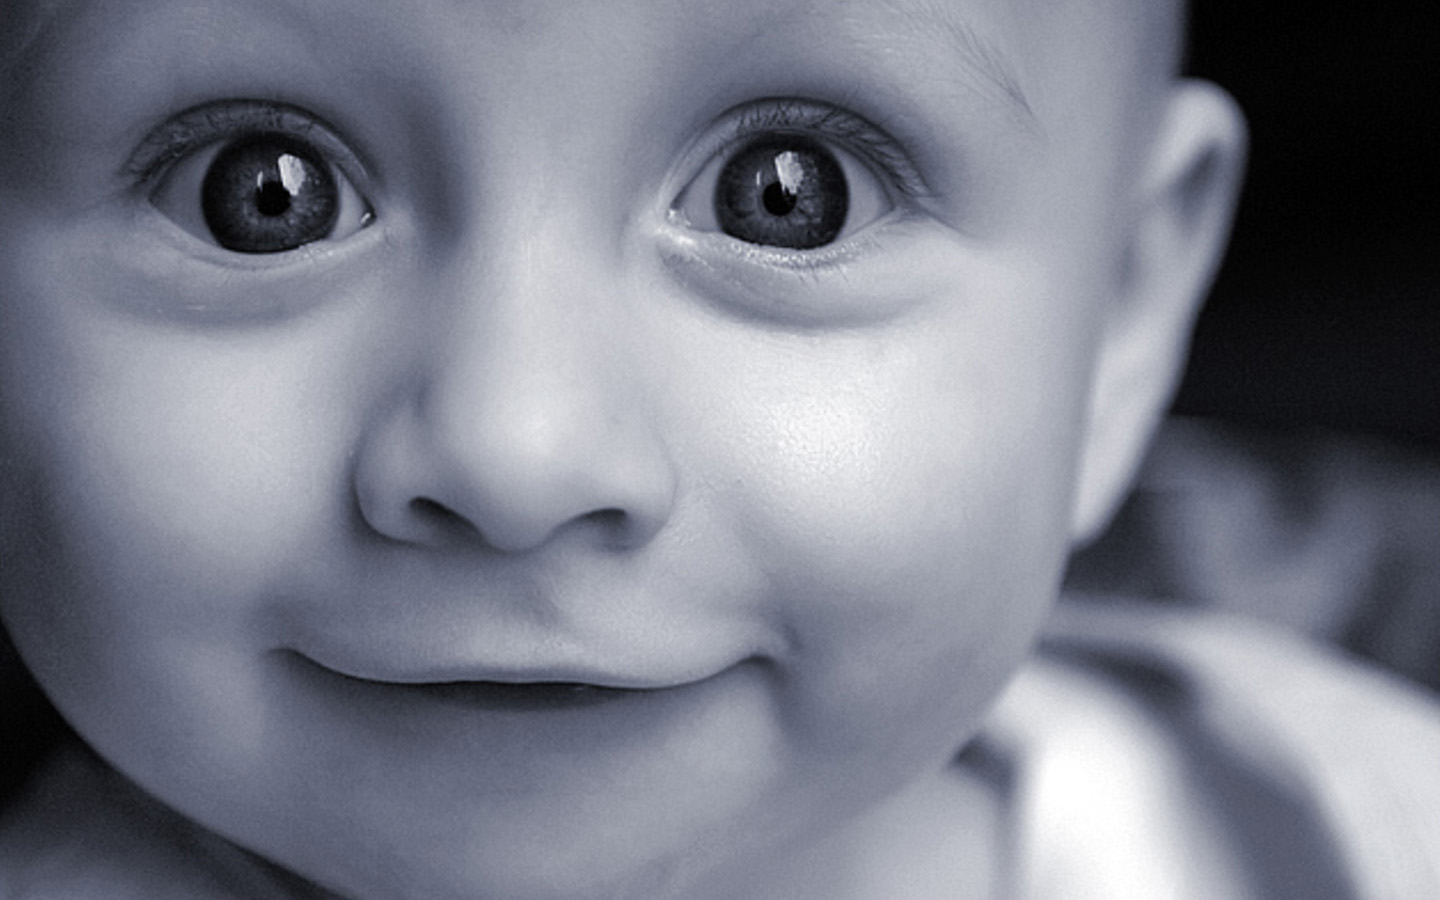 Best Hd Wallpaper Baby 3d - High Res Baby Face - 1440x900 Wallpaper -  